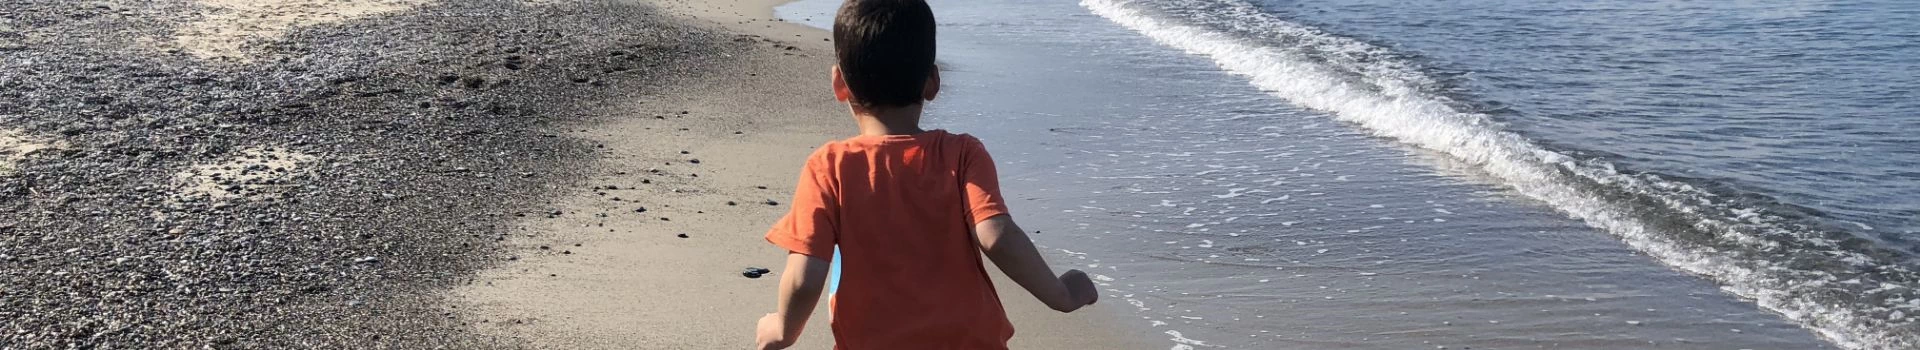 Chłopiec chodzący po plaży przy wodzie